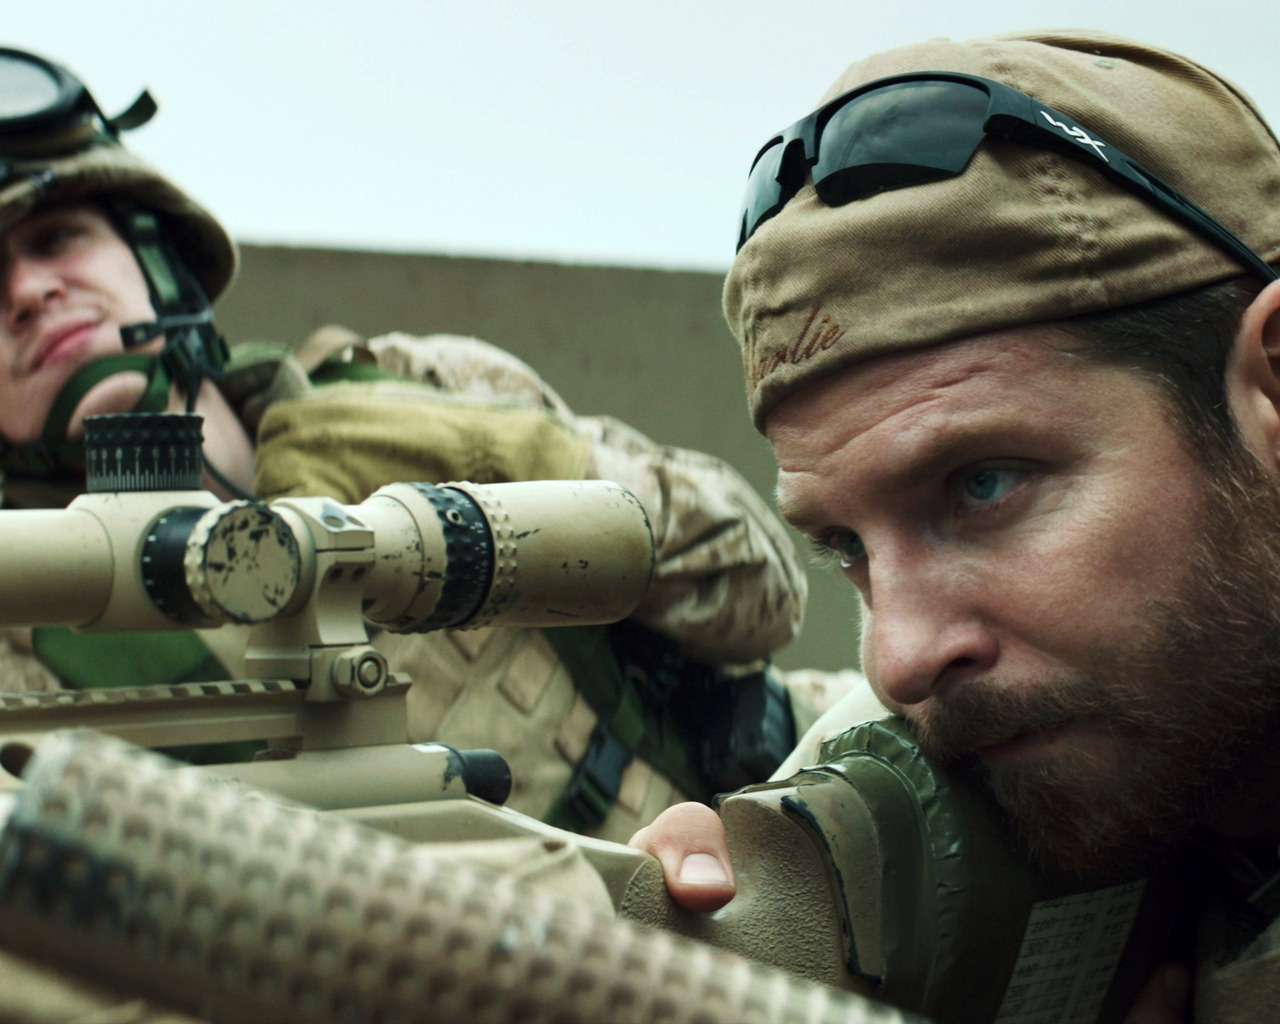 American Sniper Movie Scene for 1280 x 1024 resolution